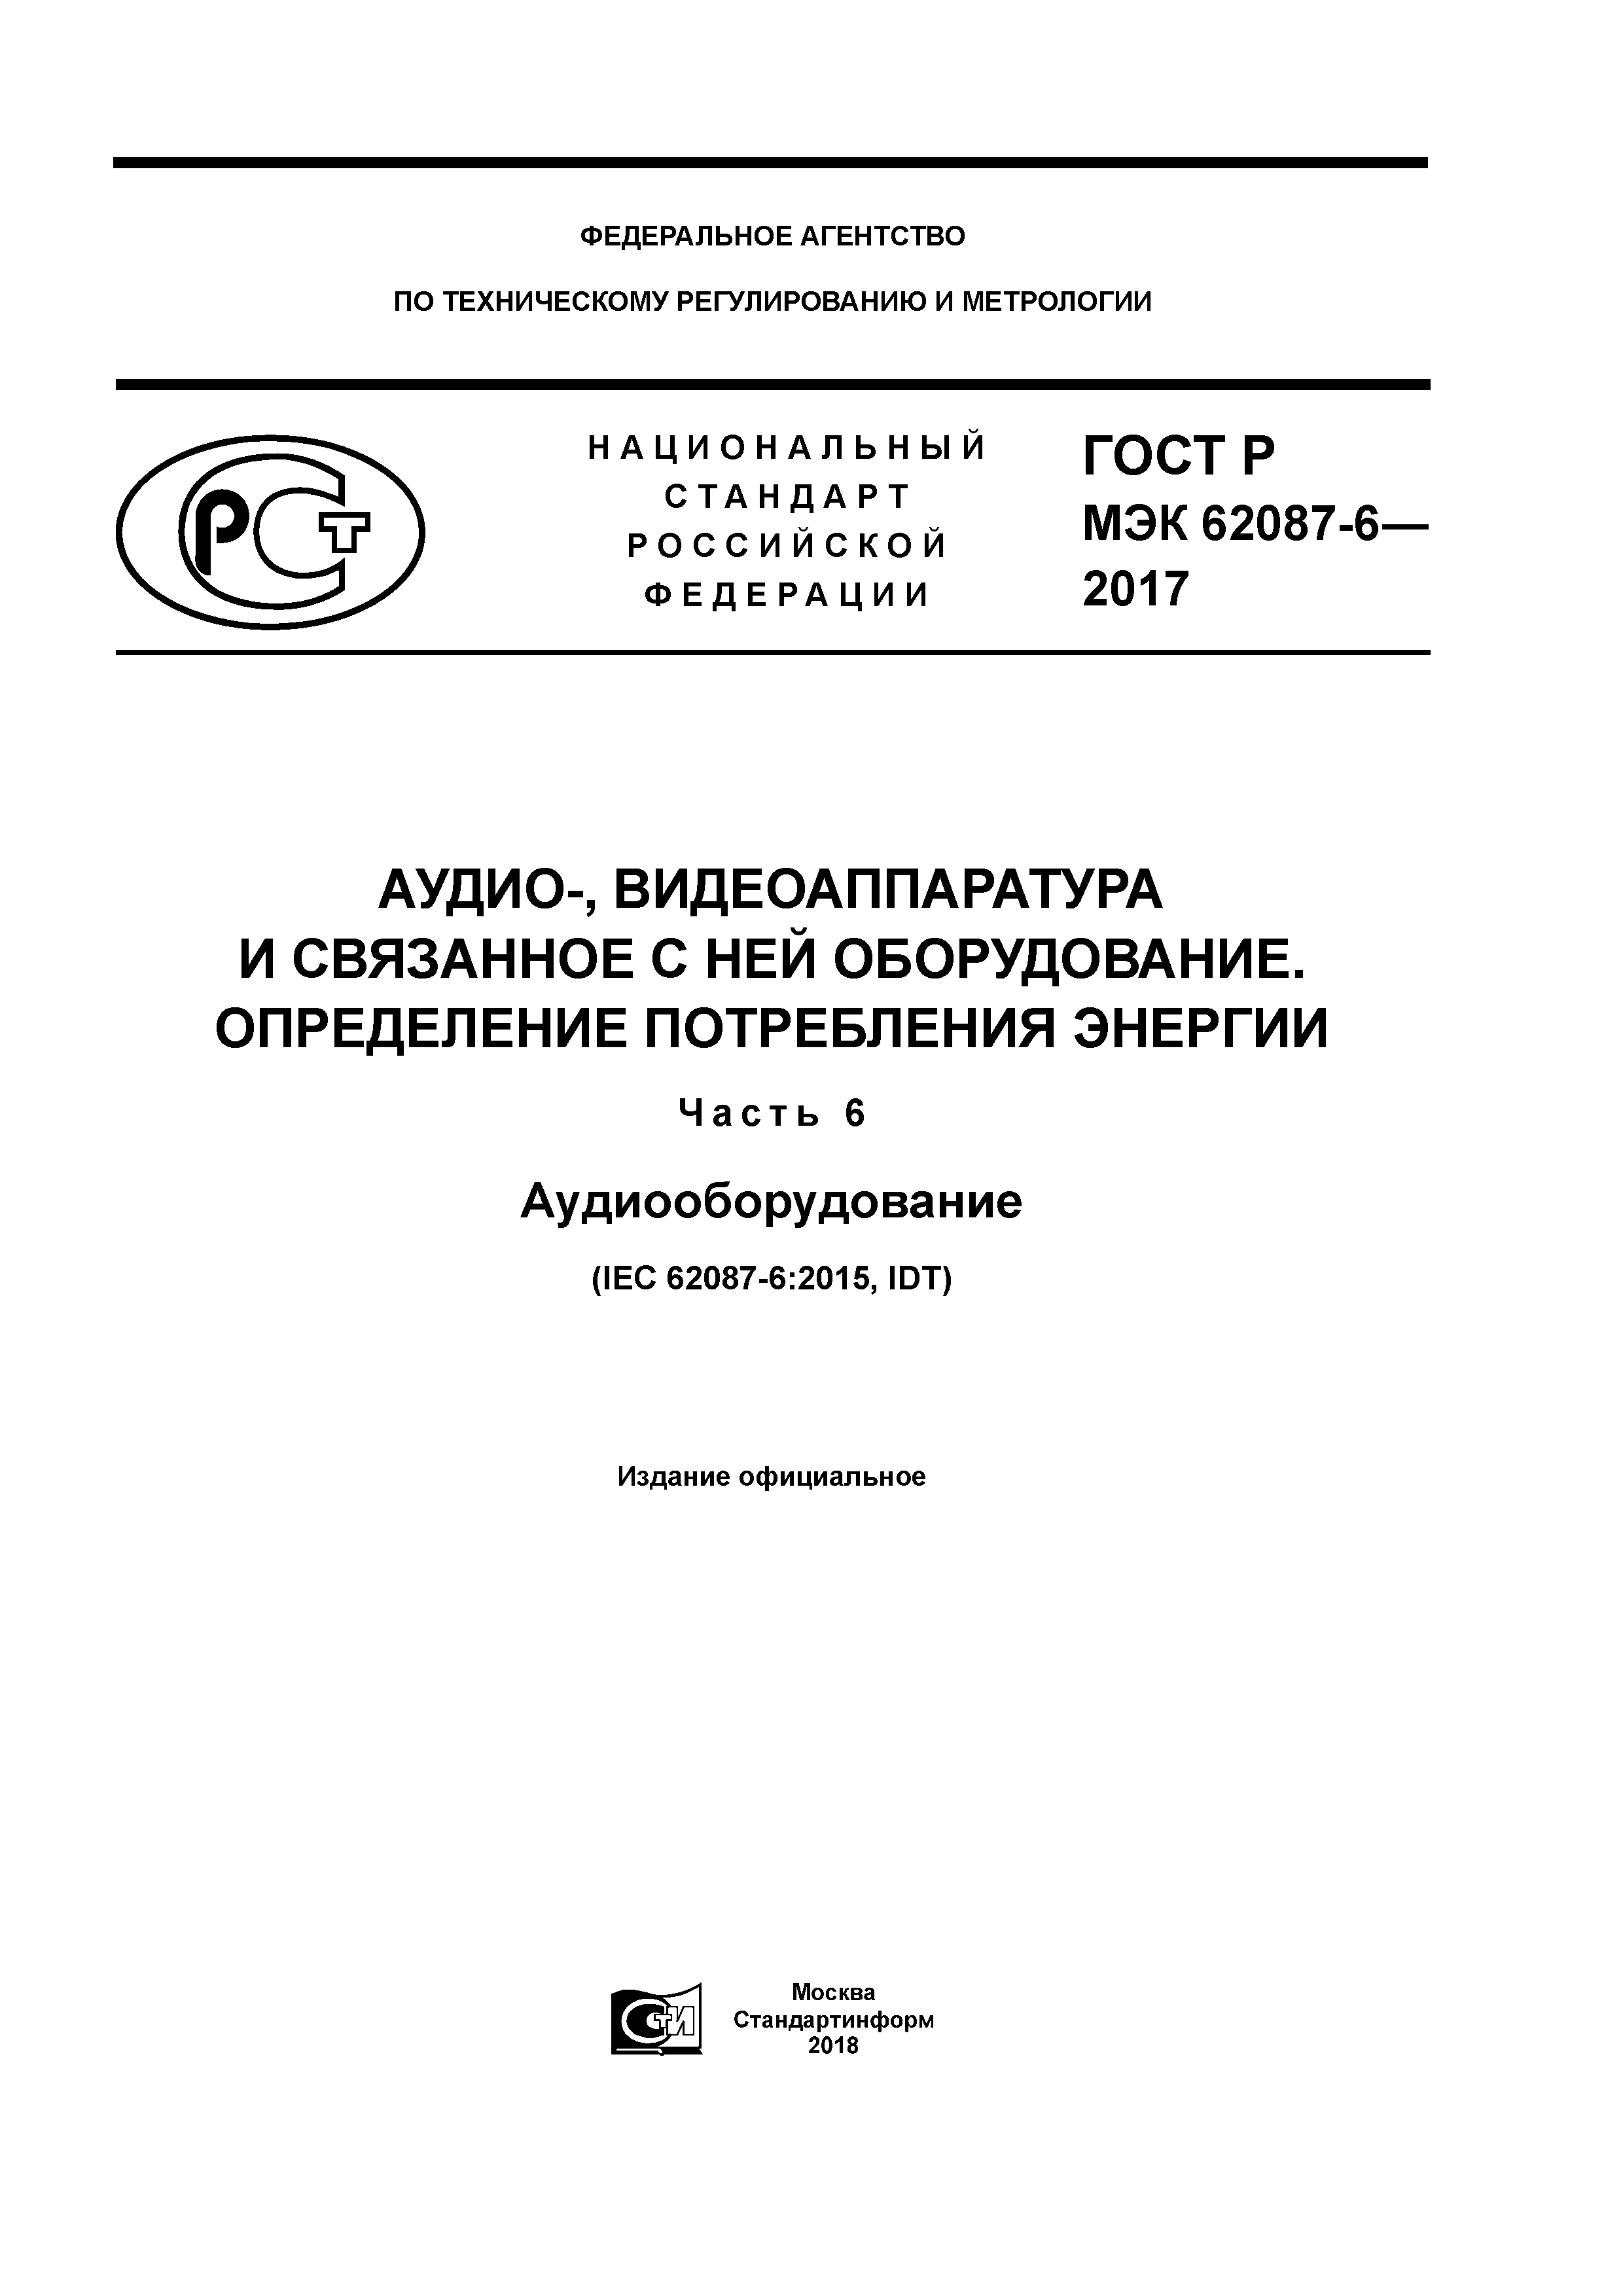 ГОСТ Р МЭК 62087-6-2017